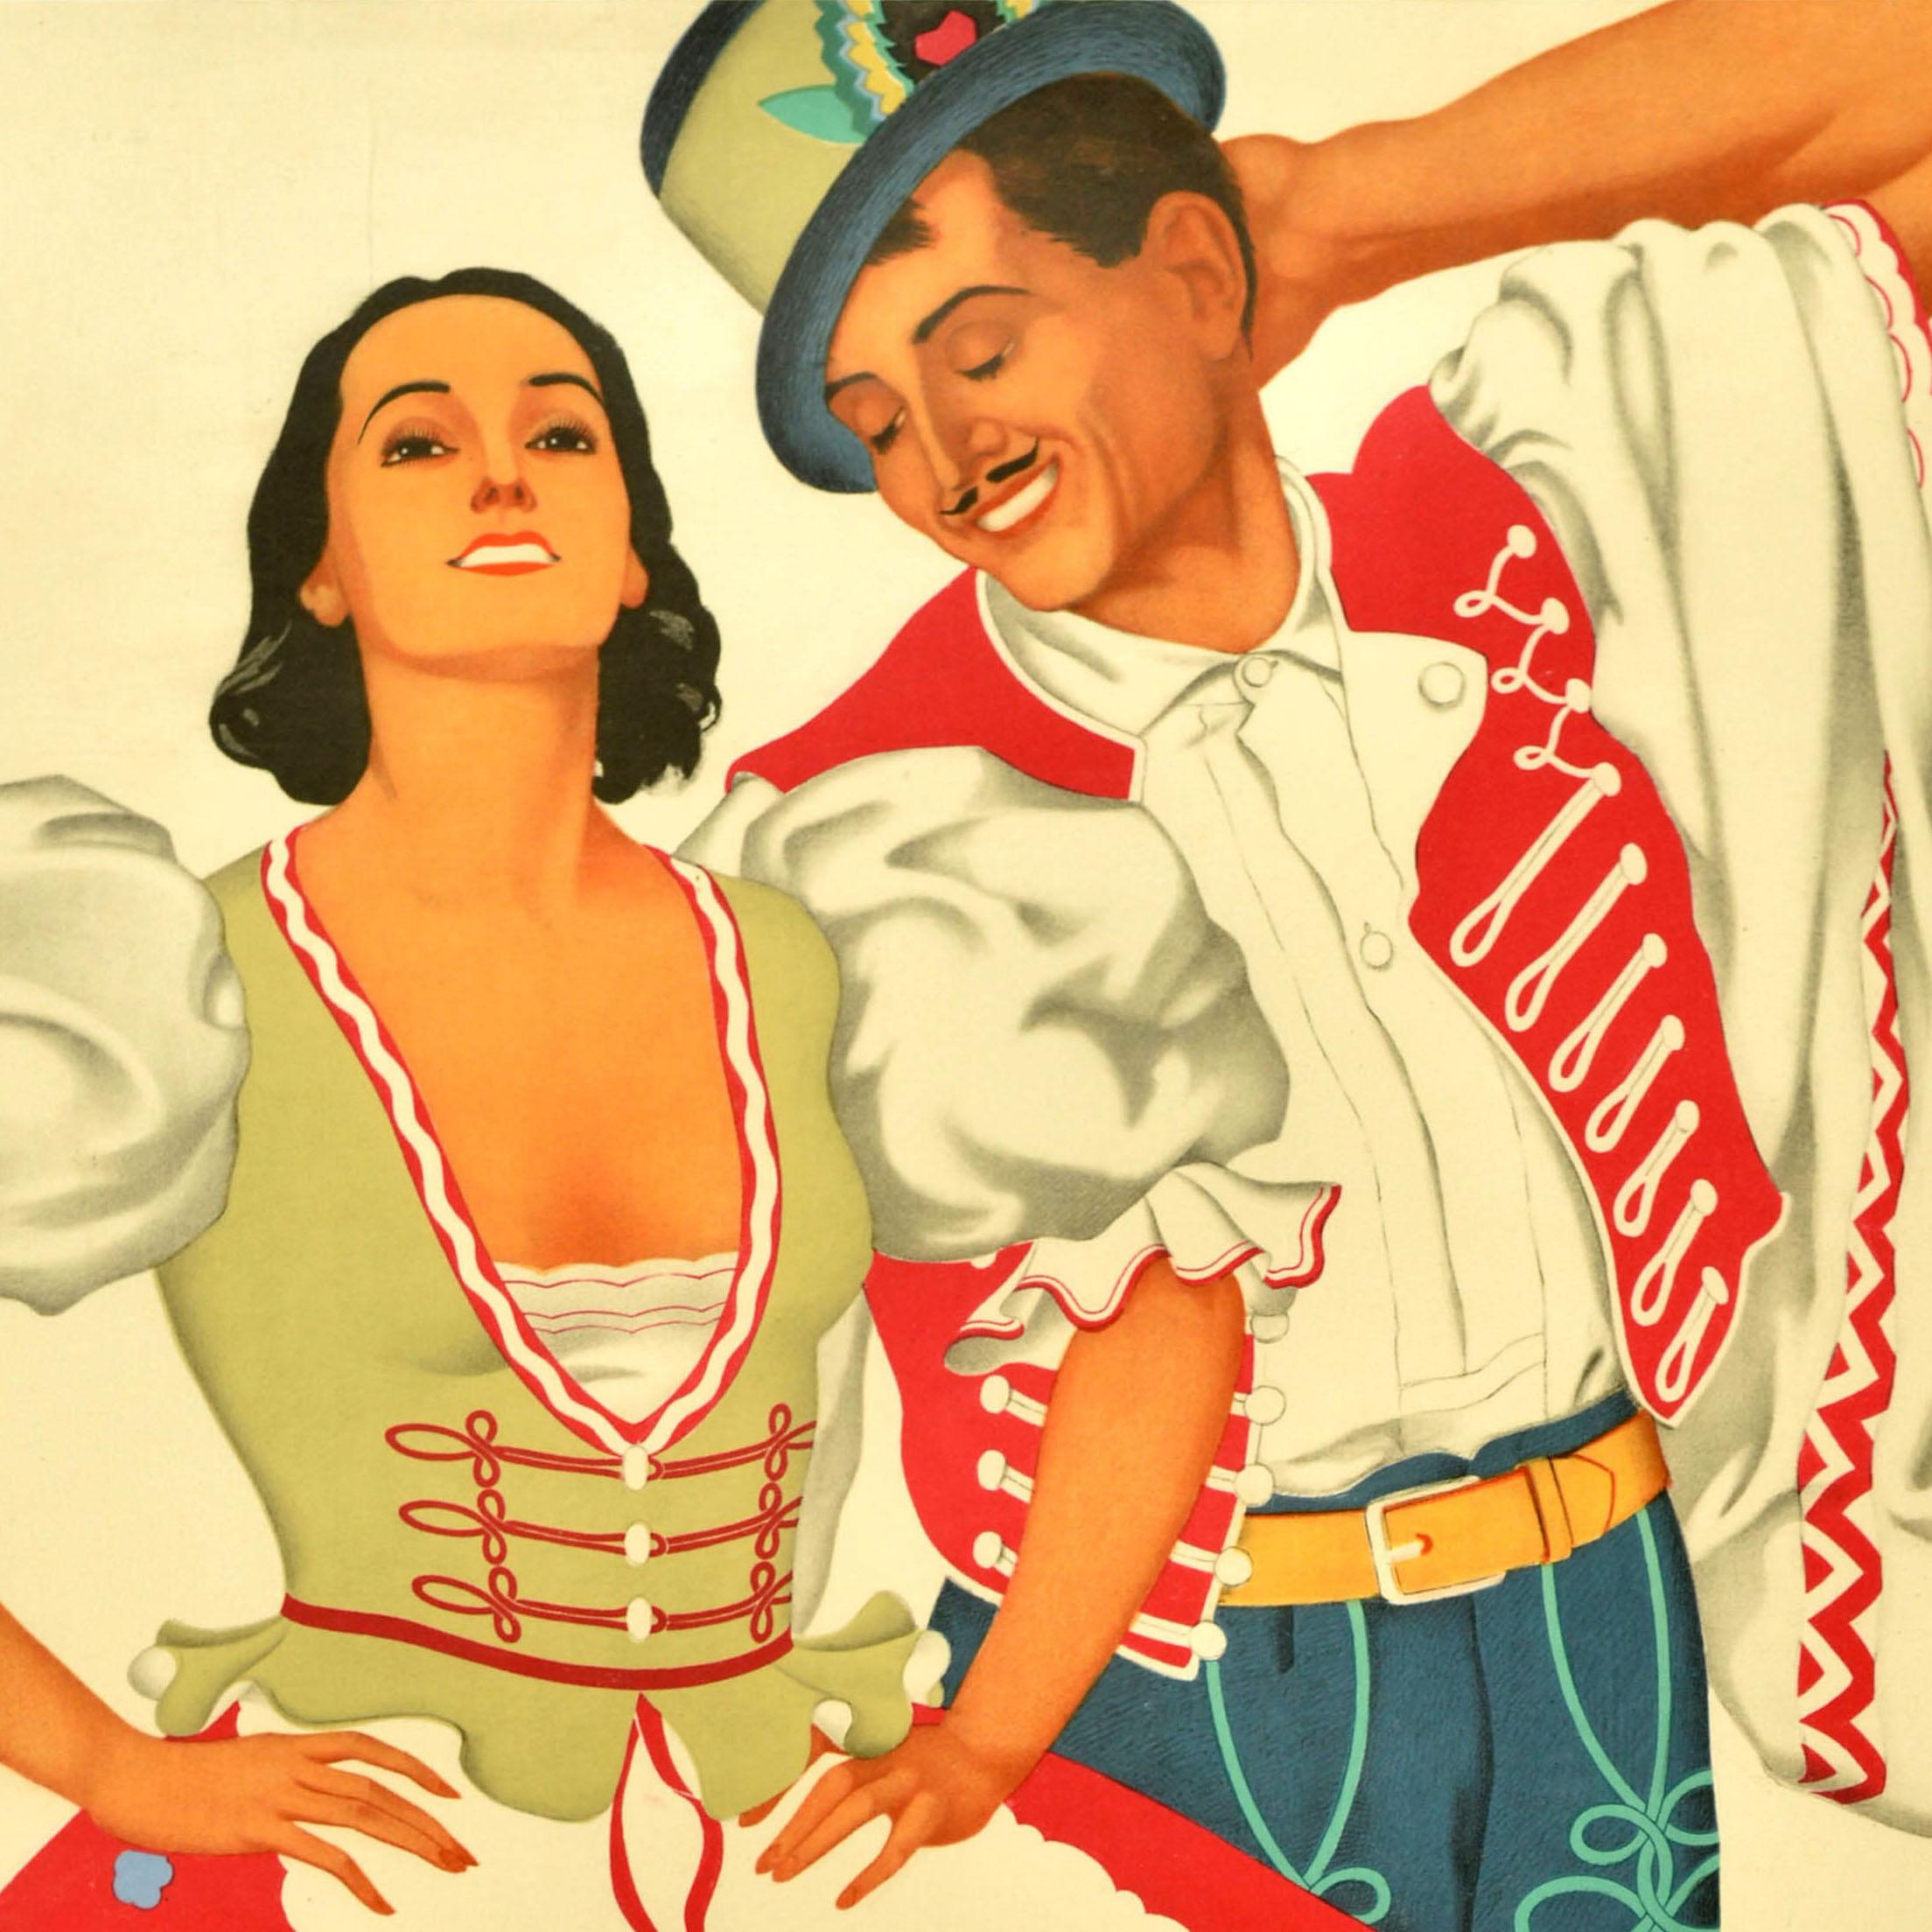 Originales Vintage-Reiseplakat für das Budapester Stadtfest mit Opernballett am 2. Februar 1939 im Deutschen Theater - Festball der Stadt Budapest mit dem Kgl. Ung. Opernballett Deutsches Theater - mit einer farbenfrohen Illustration zweier Tänzer